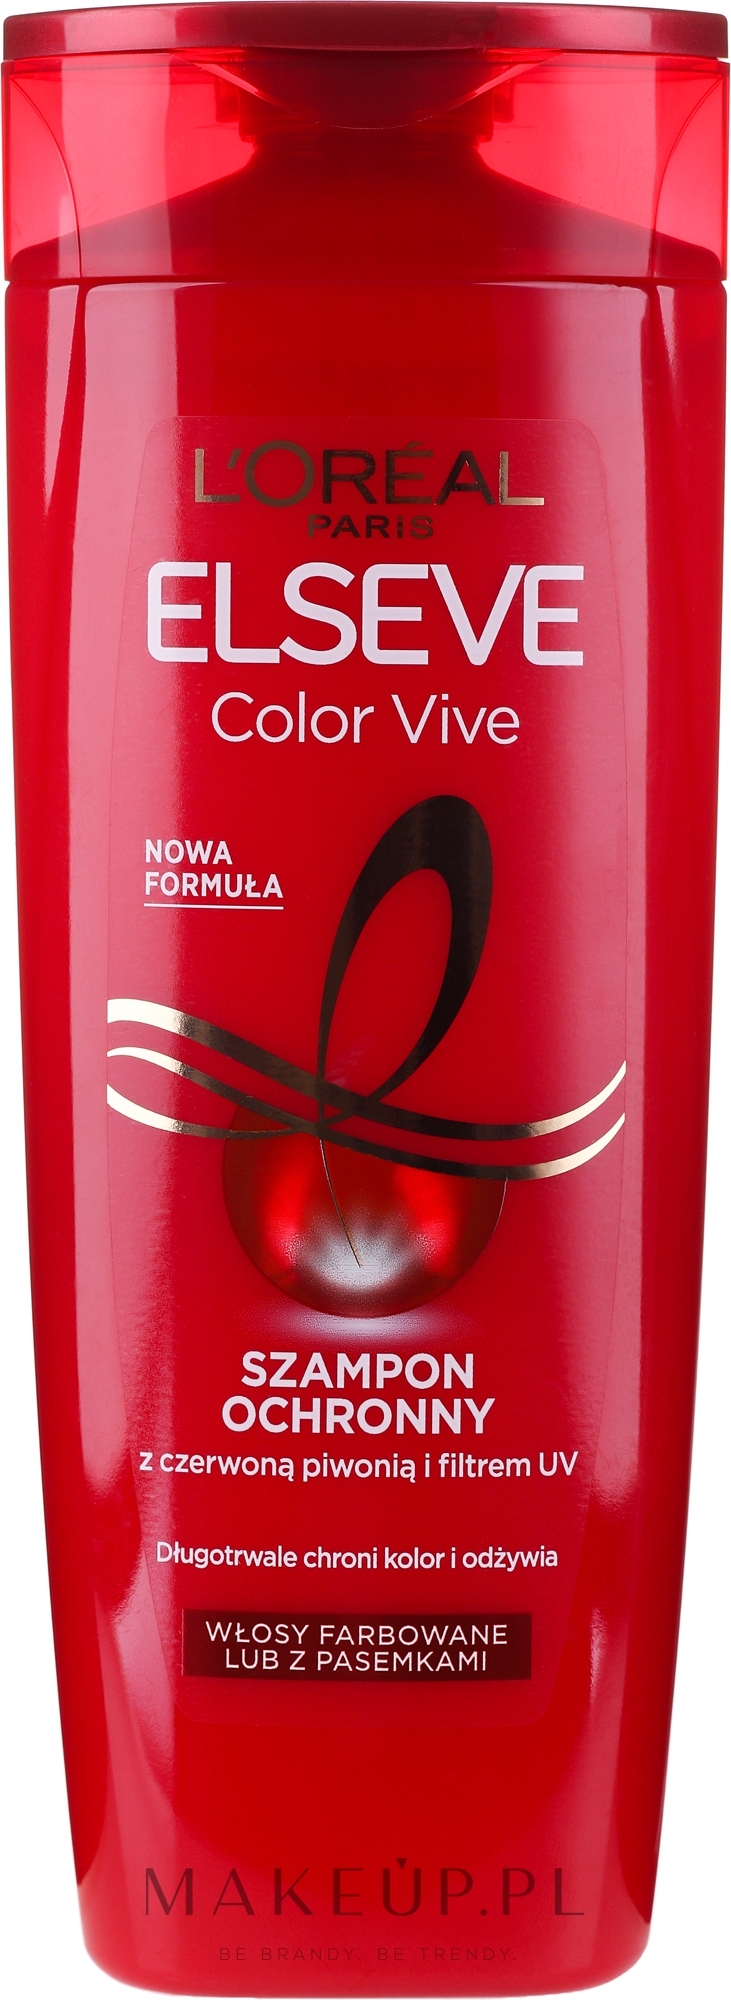 szampon loreal paris do włosów farbowanych